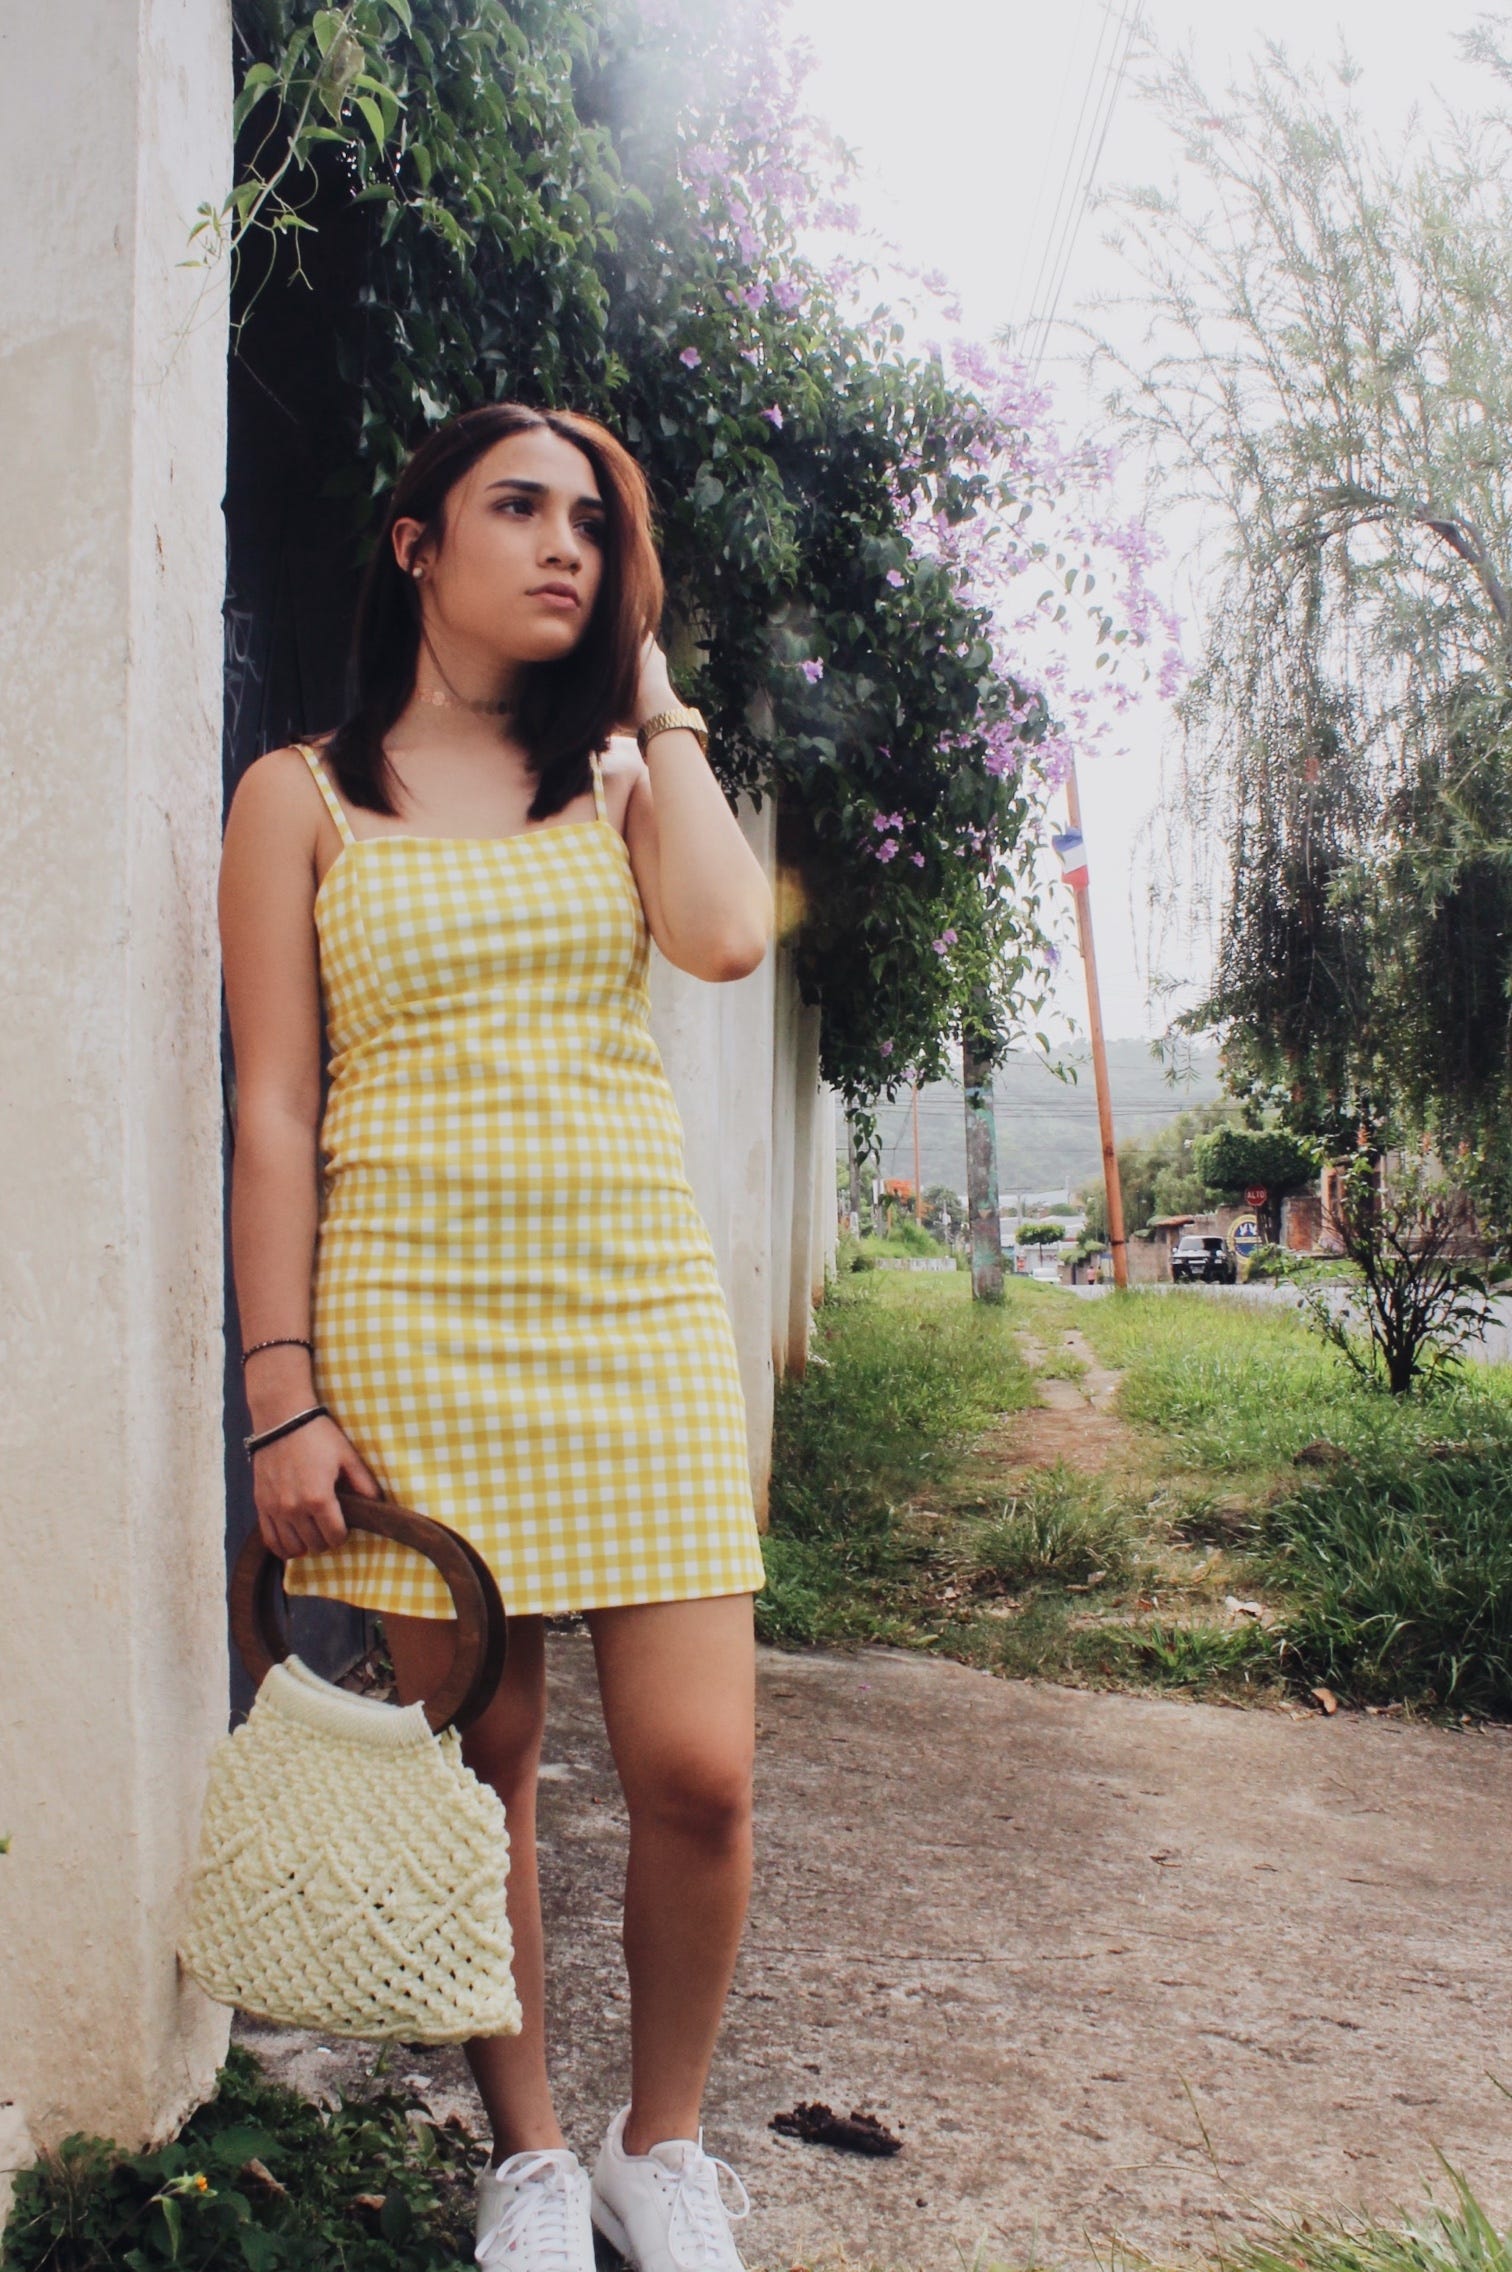 Vestido con tenis?. Creo que en los tiempos de nuestras… | by Paola Vargas  AKA Minikin | Medium